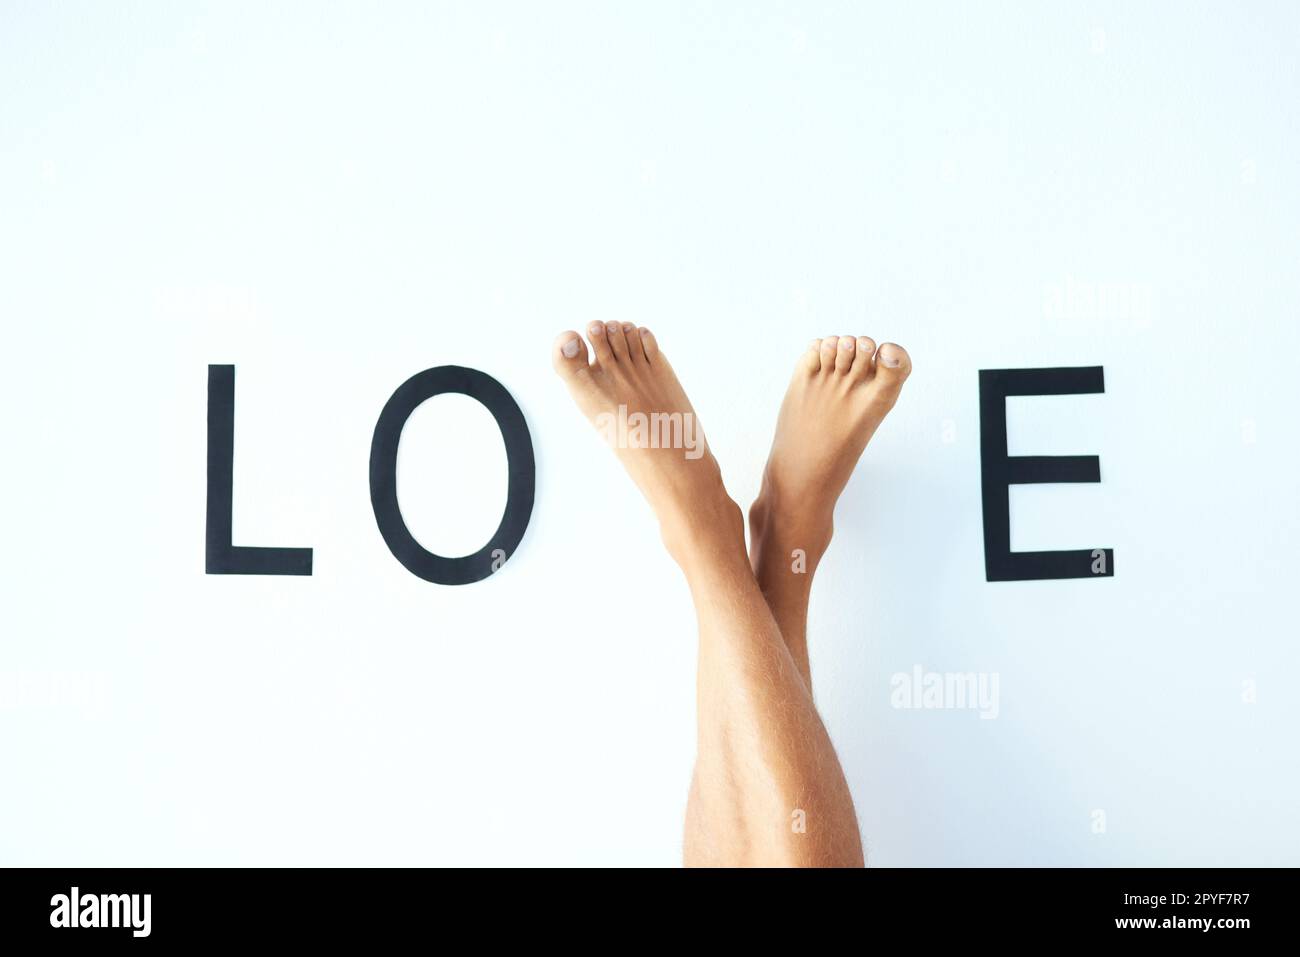 Ich werde gehen, bis ich eines Tages Liebe finde. Studiofoto eines unbekannten mannes kreuzte die Beine mit den Füßen und formte den Buchstaben V im Wort LIEBE. Stockfoto